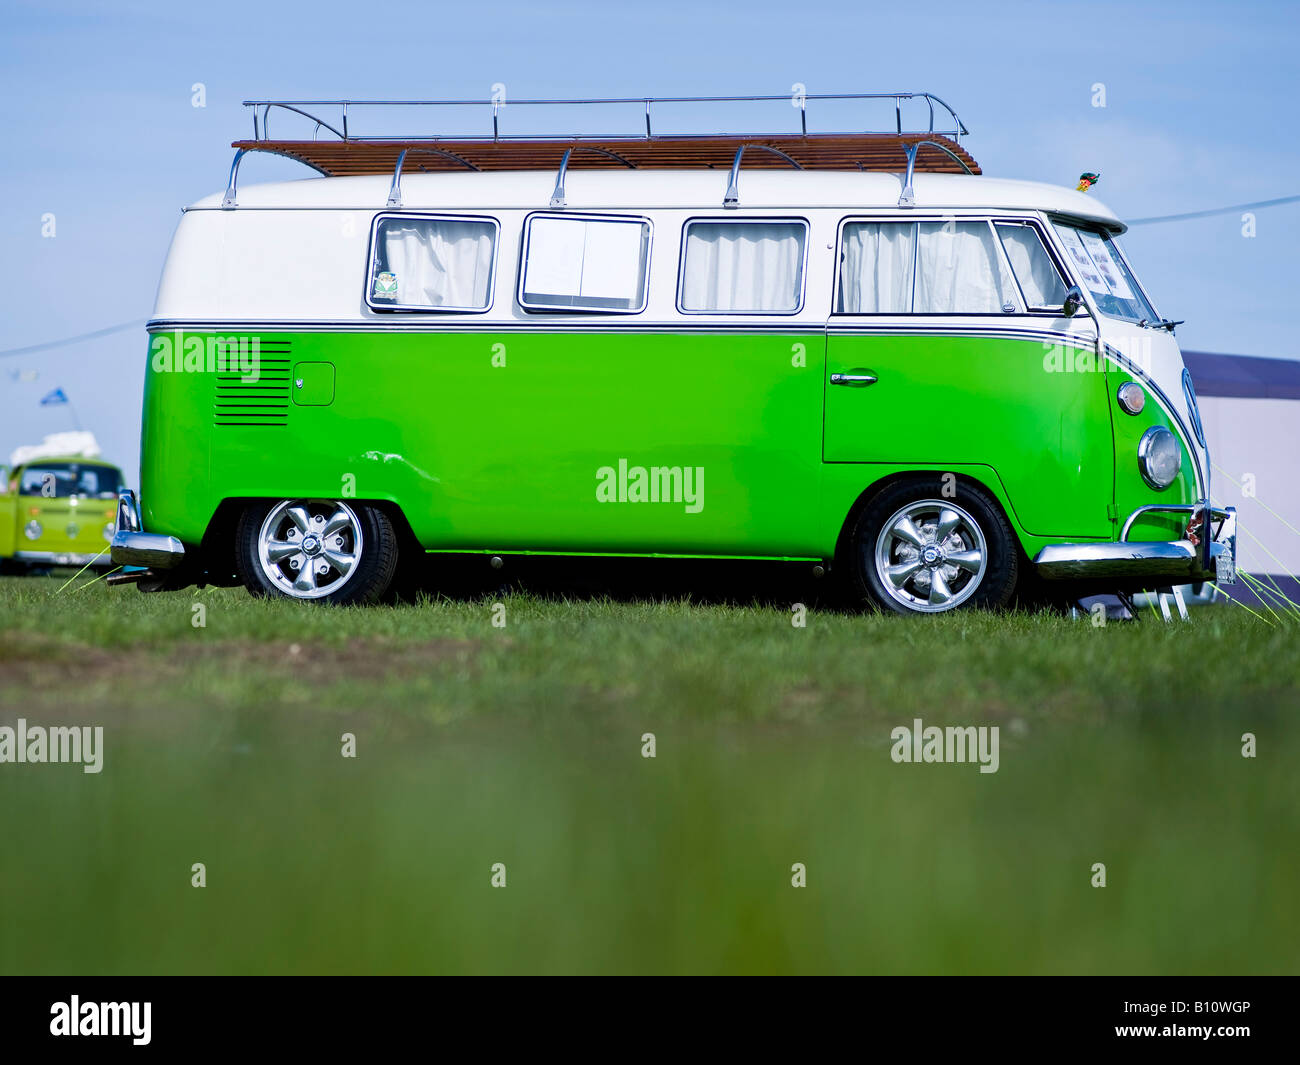 green vw volkswagen split screen camper van bus lowered modified Stock Photo